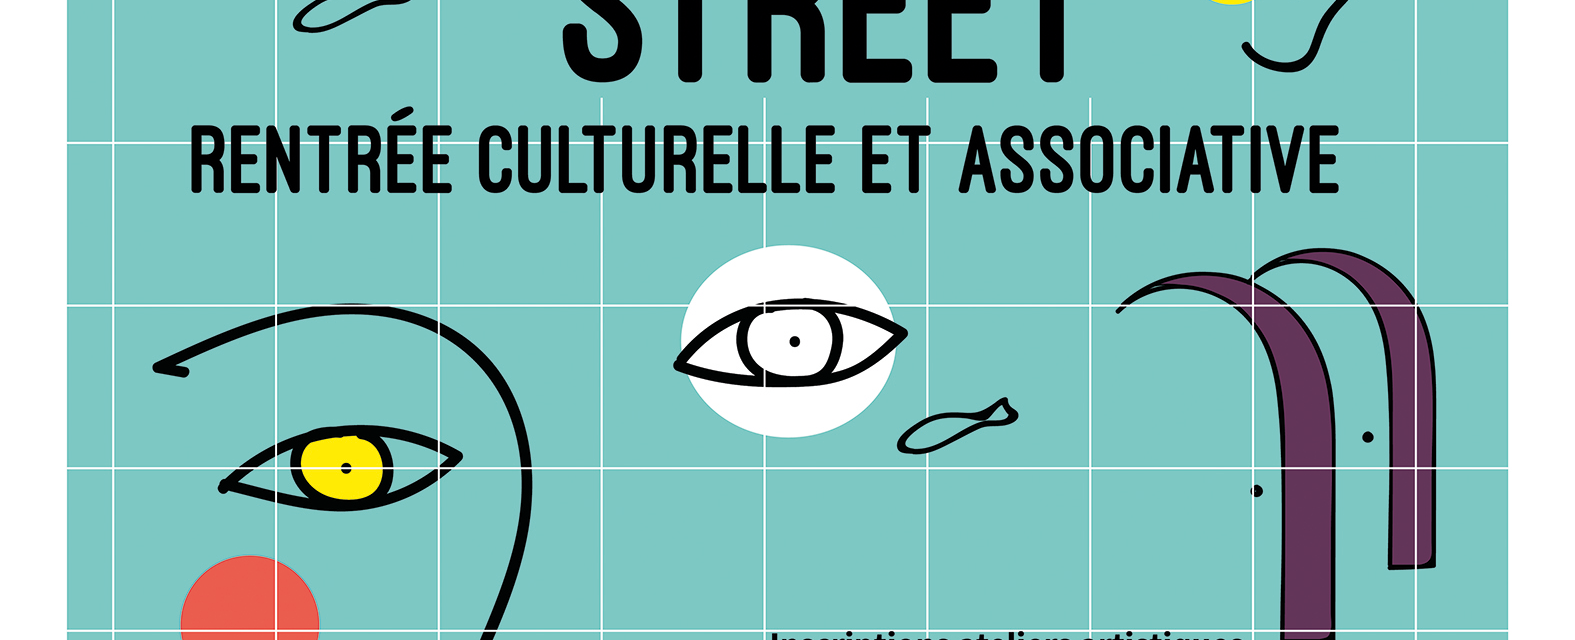 Crazy Street : Rentrée culturelle et associative 1